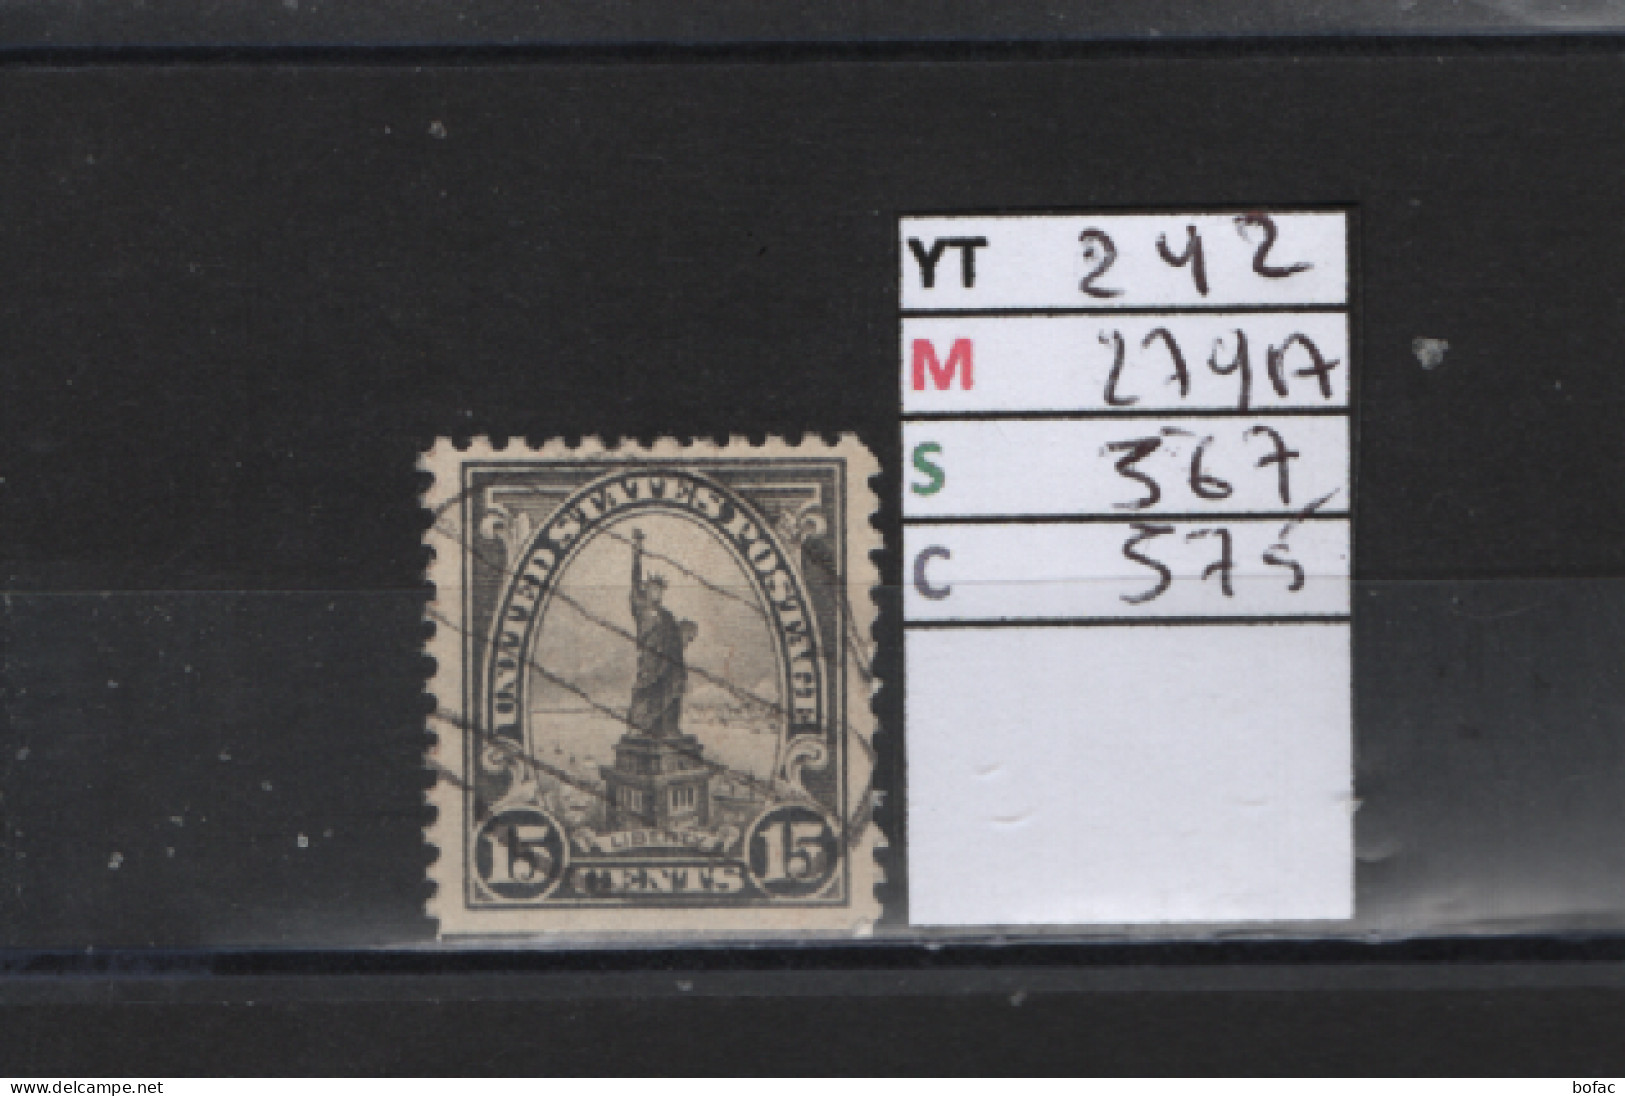 PRIX FIXE Obl 242 YT 279A MIC US567 SCOT US575 GIB  Statue De La Liberté 1922 1925 Etats Unis 58/08  Dentelé 3 Cotés - Used Stamps